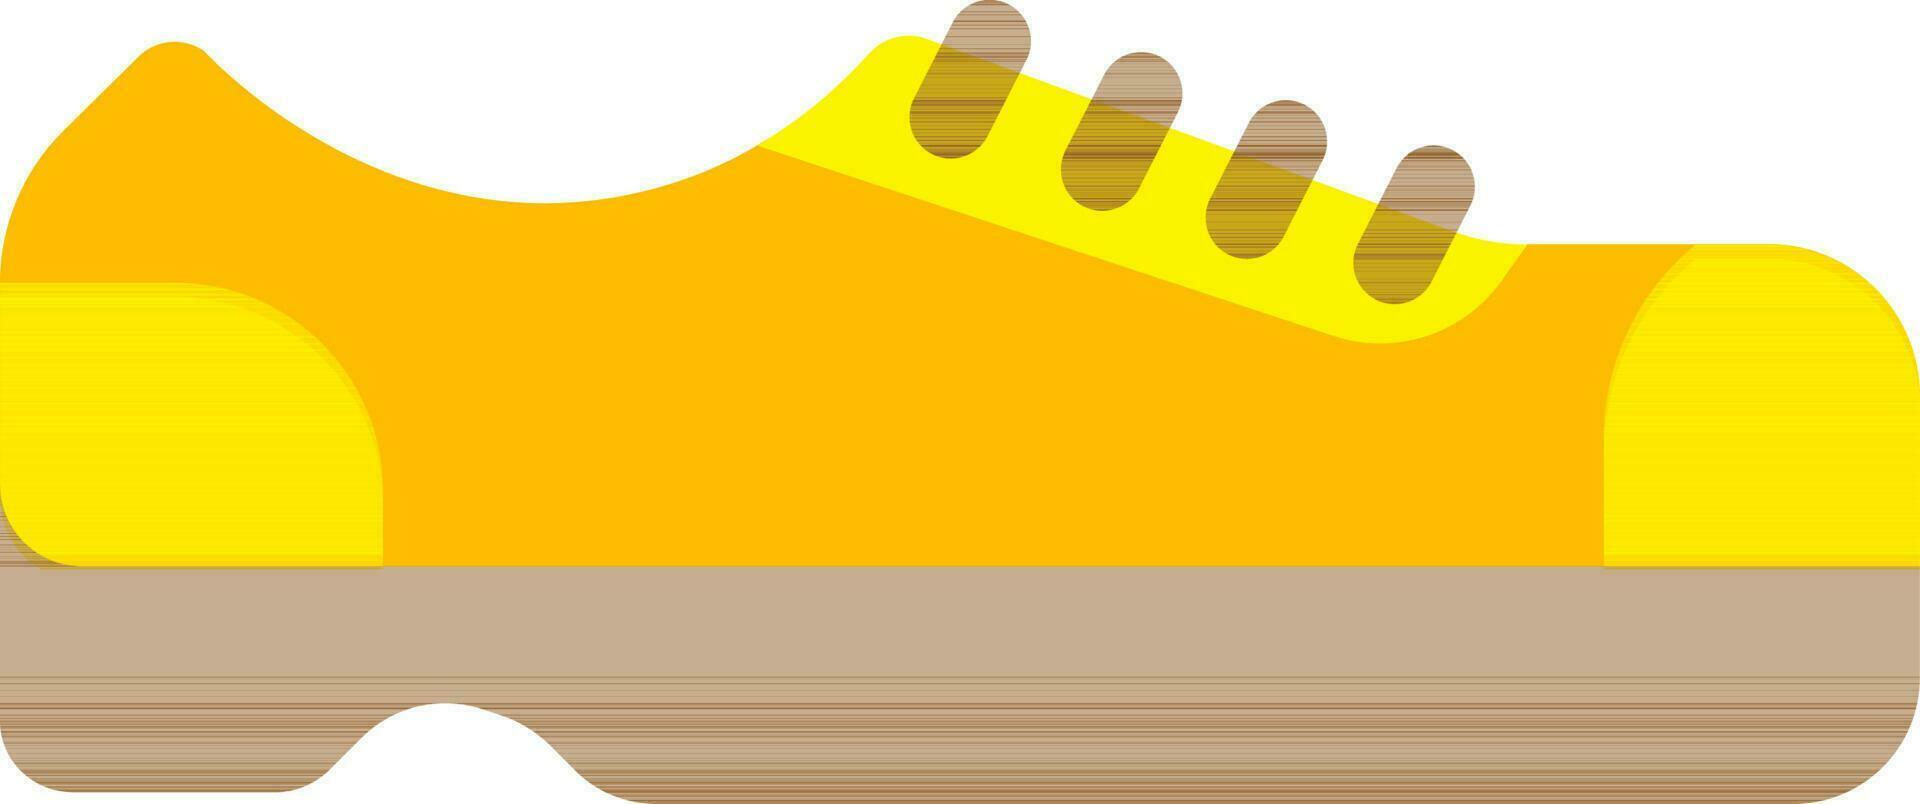 tenue de sport des chaussures icône dans Jaune et marron couleur. vecteur